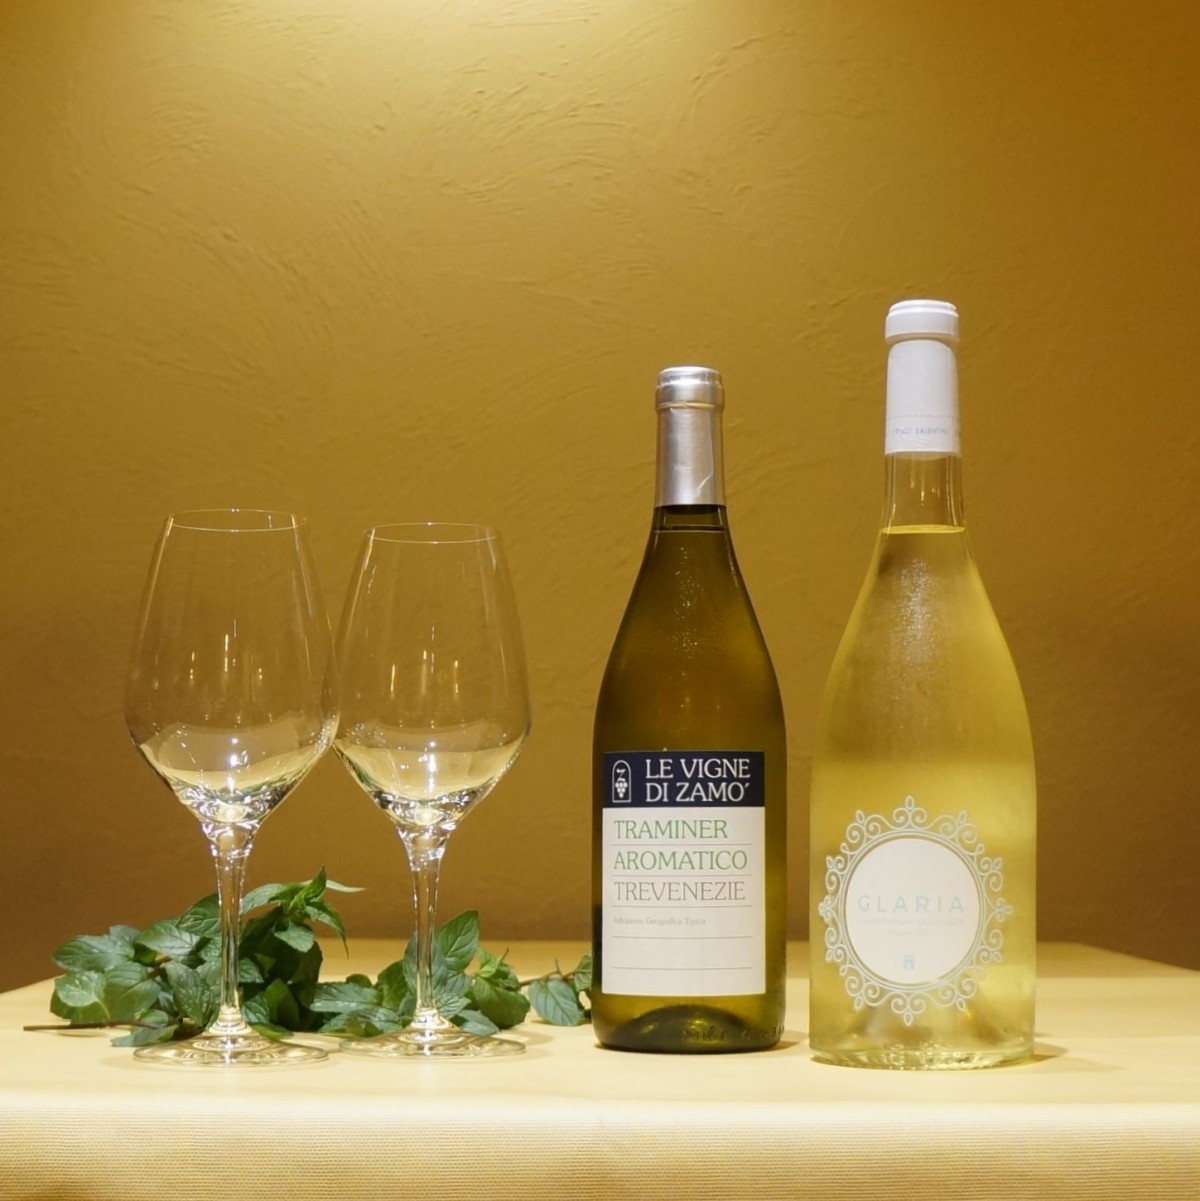 990円 今季一番 アロマが溢れ出す地中海の白ワイン ドンナフガータの中でも人気の白 ドンナフガータ リゲア 2021 DONNAFUGATA Lighea SICILIA DOC